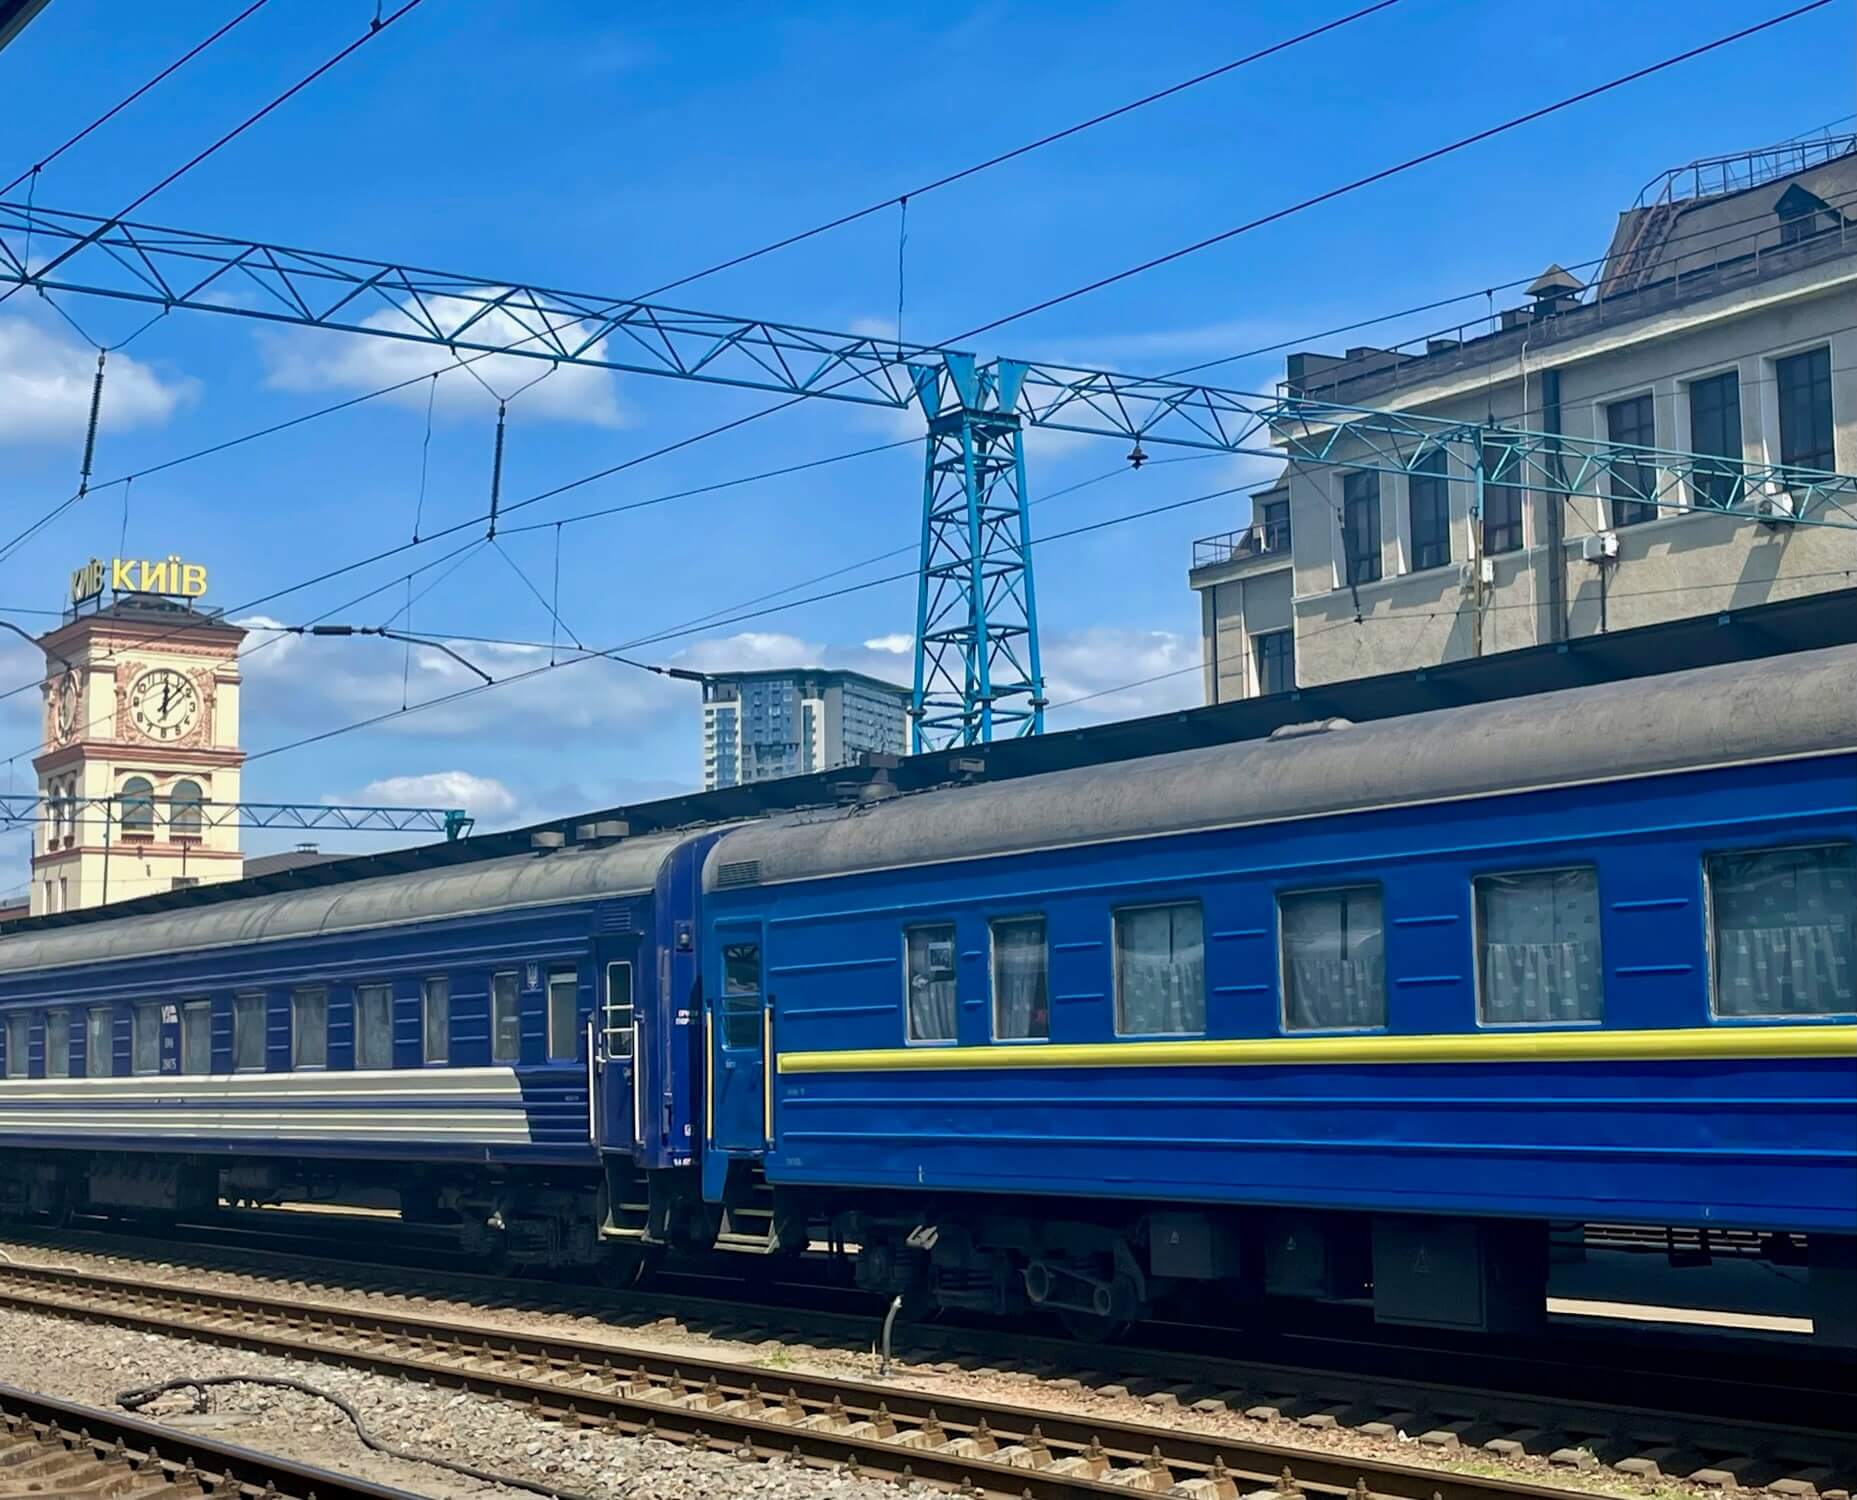 Return to Kyiv